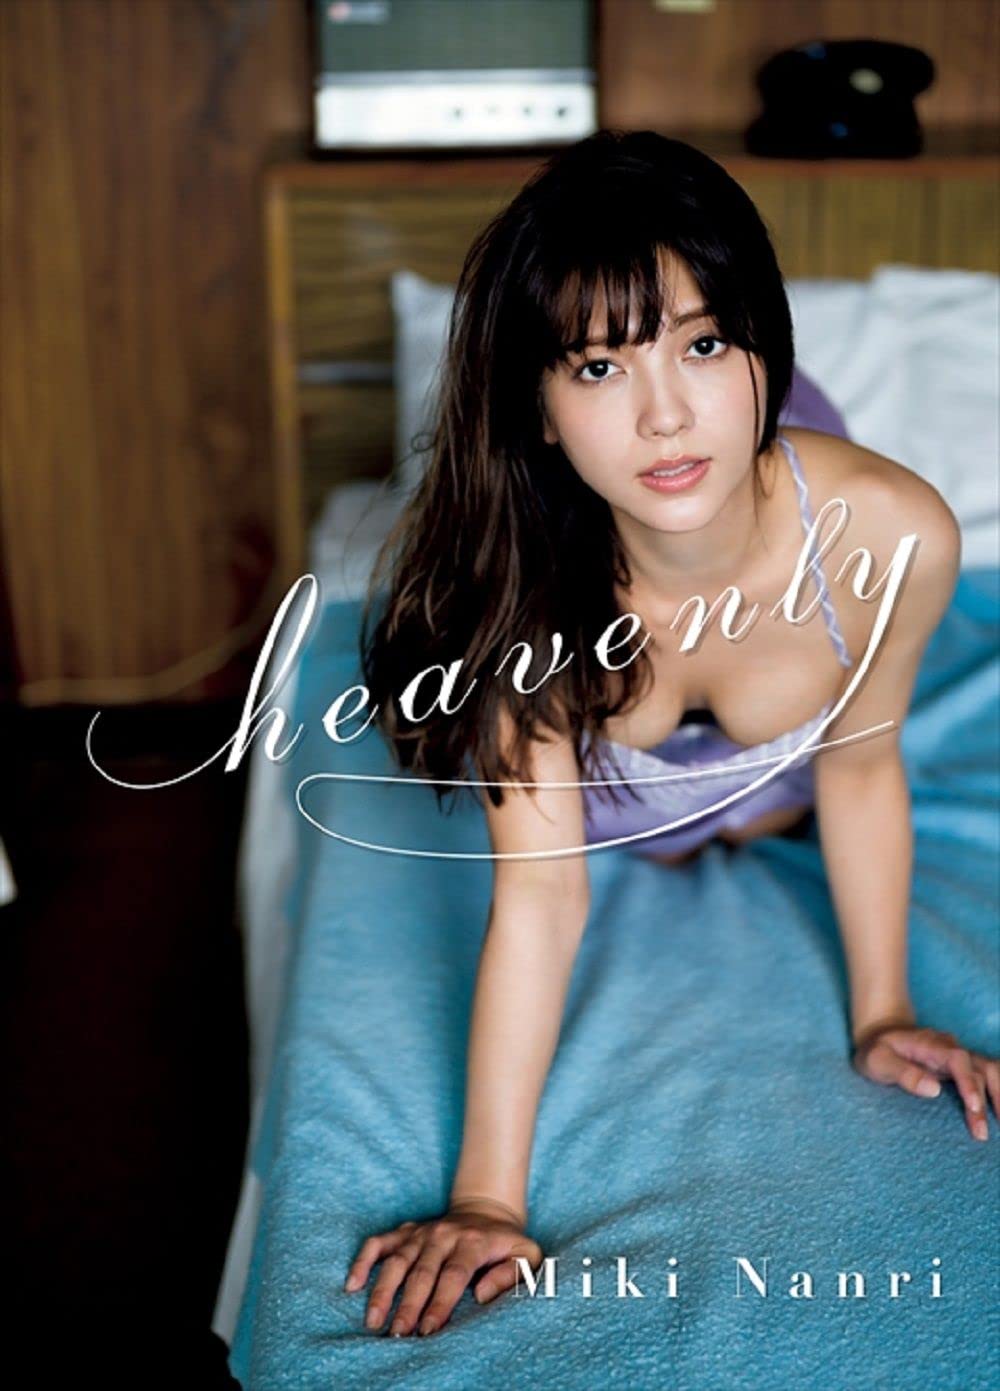 Miki Nanri 1st Photo Book "heavenly"